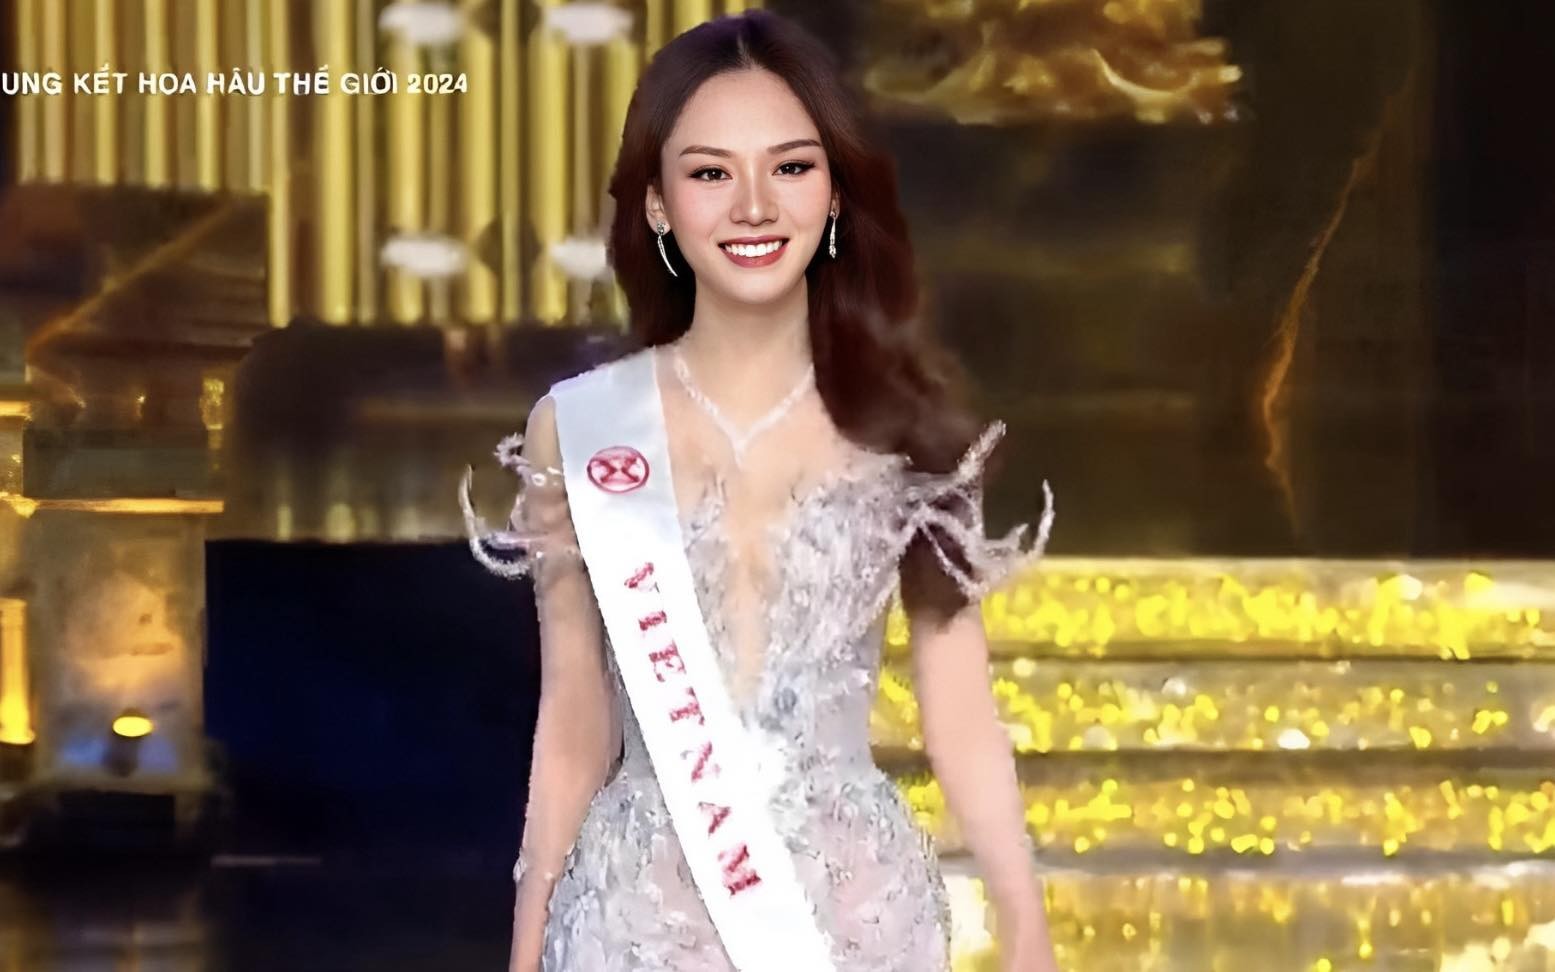 Chung kết Hoa hậu Thế giới 2024: Mai Phương vào top 40 ảnh 1